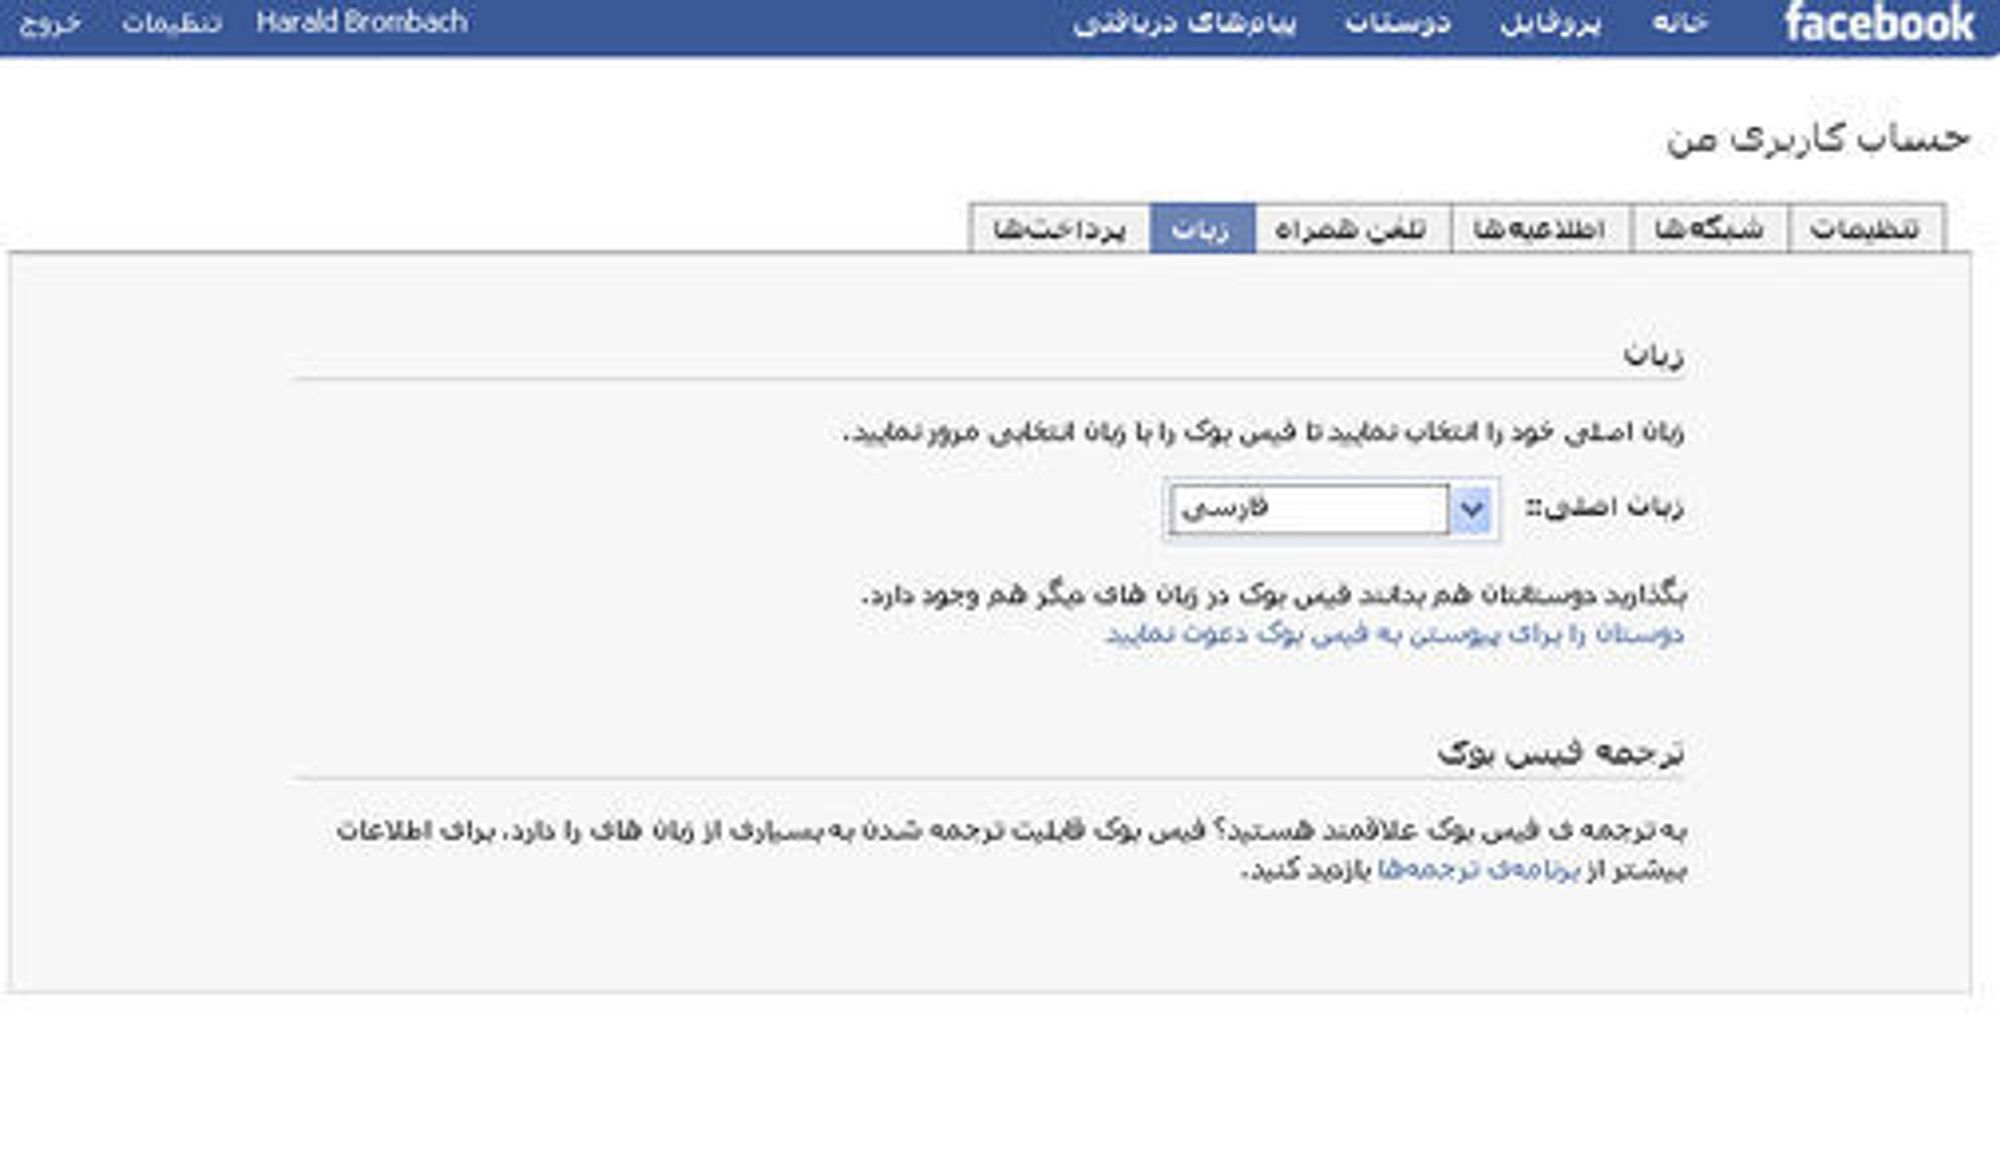 Facebook på farsi